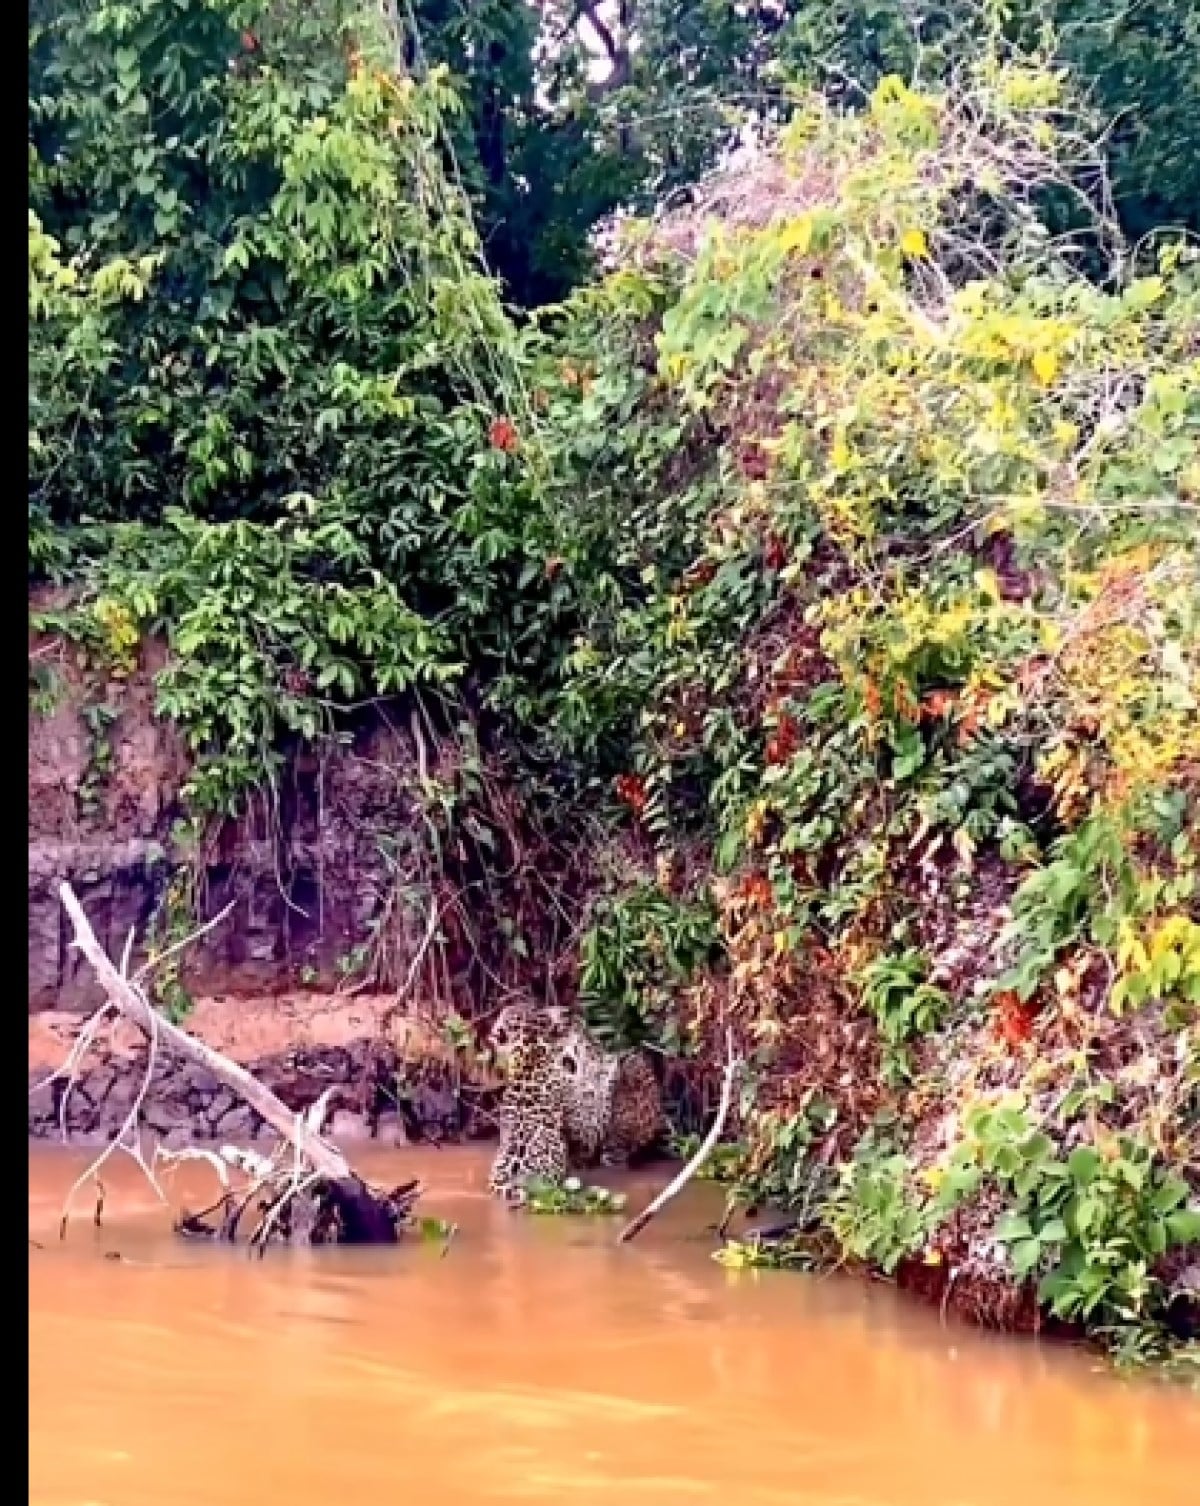 Onças-pintadas vocalizam de forma atípica no Pantanal